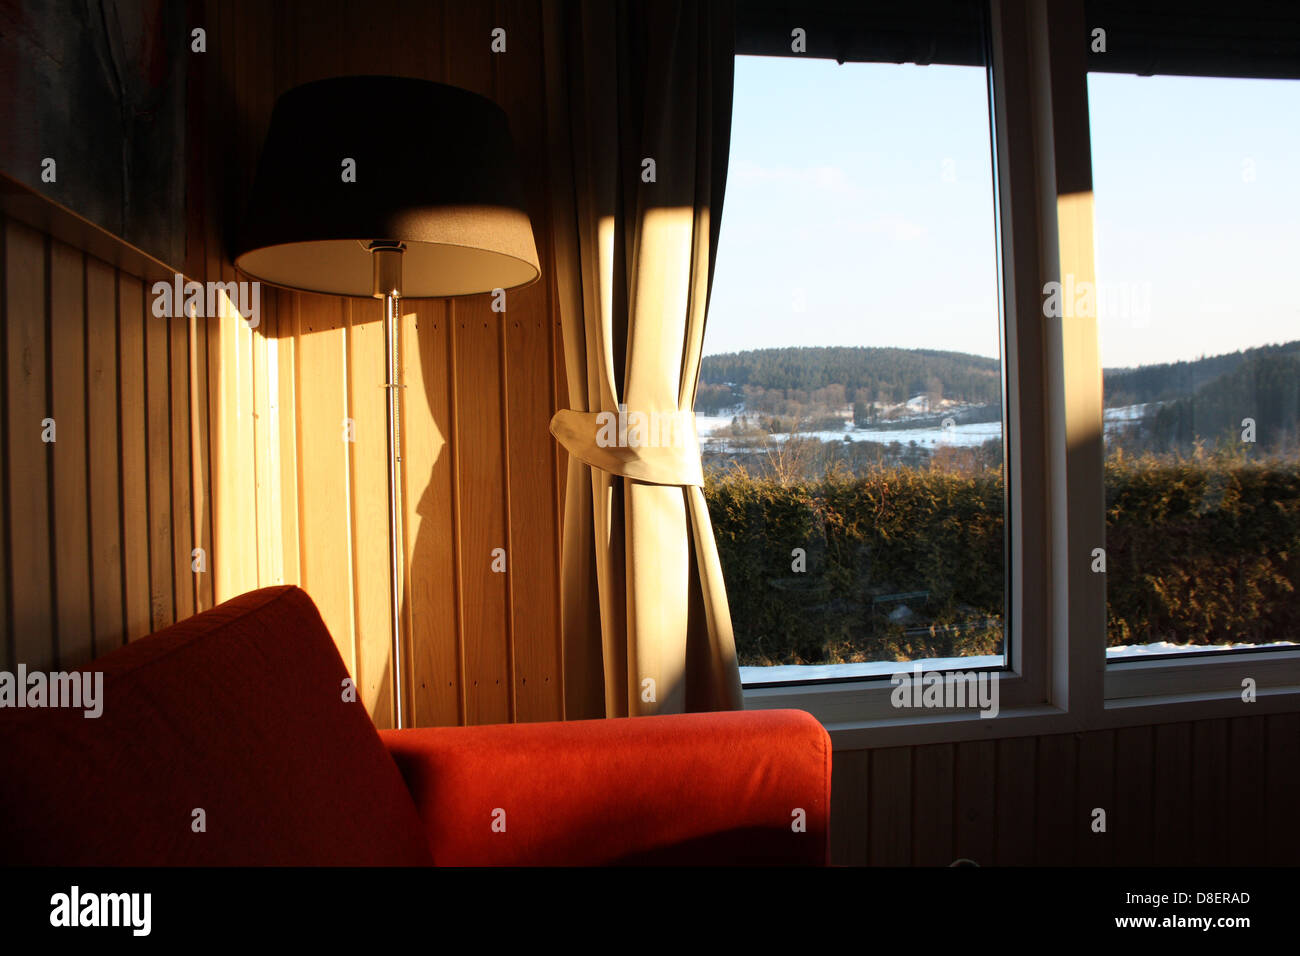 La luce solare che colpisce il soggiorno a parete con un vasto paesaggio al di fuori. Foto Stock